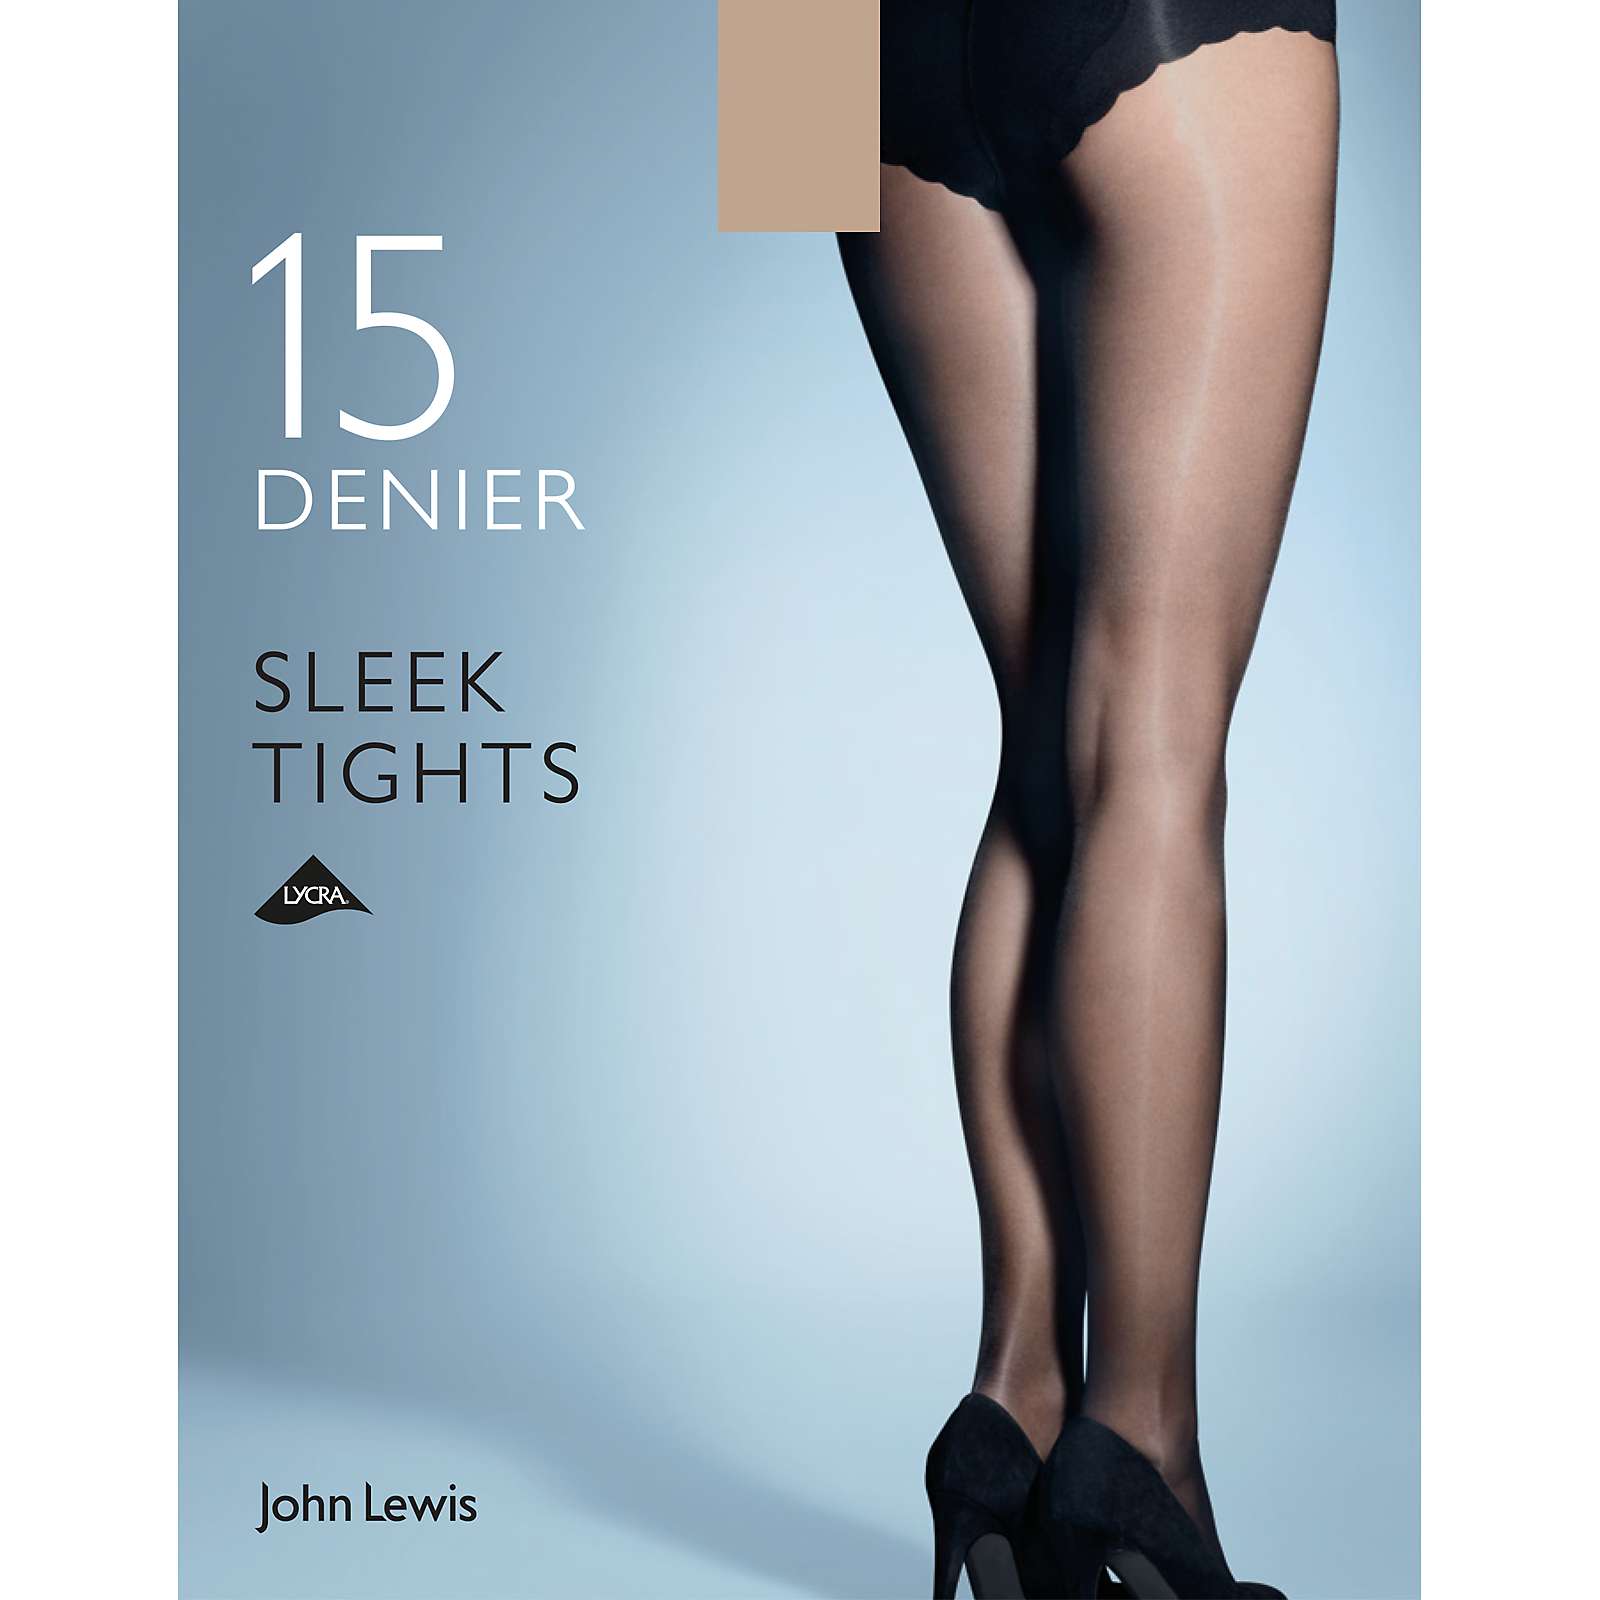 Buy John Lewis 15 Denier Sleek Tights, Pack of 1 Online at johnlewis.com